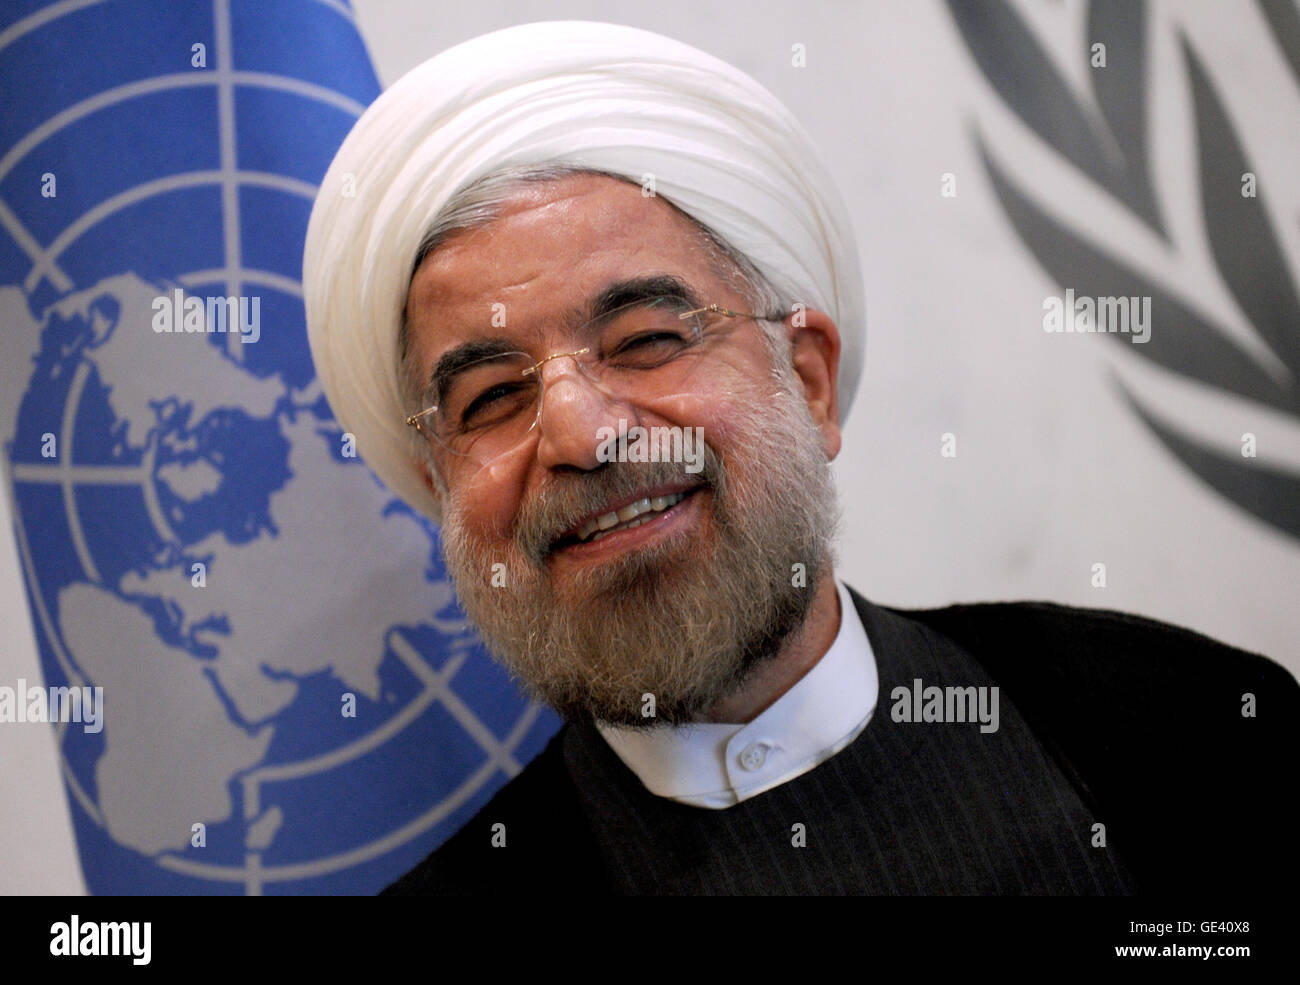 NEW YORK, NY - 26 SEPTEMBRE : Hassan Rouhani, Président de l'Iran assiste à la 68e session de l'Assemblée générale des Nations Unies le 26 septembre 2013 à New York. Crédit photo : Van Tine/MediaPunch Banque D'Images